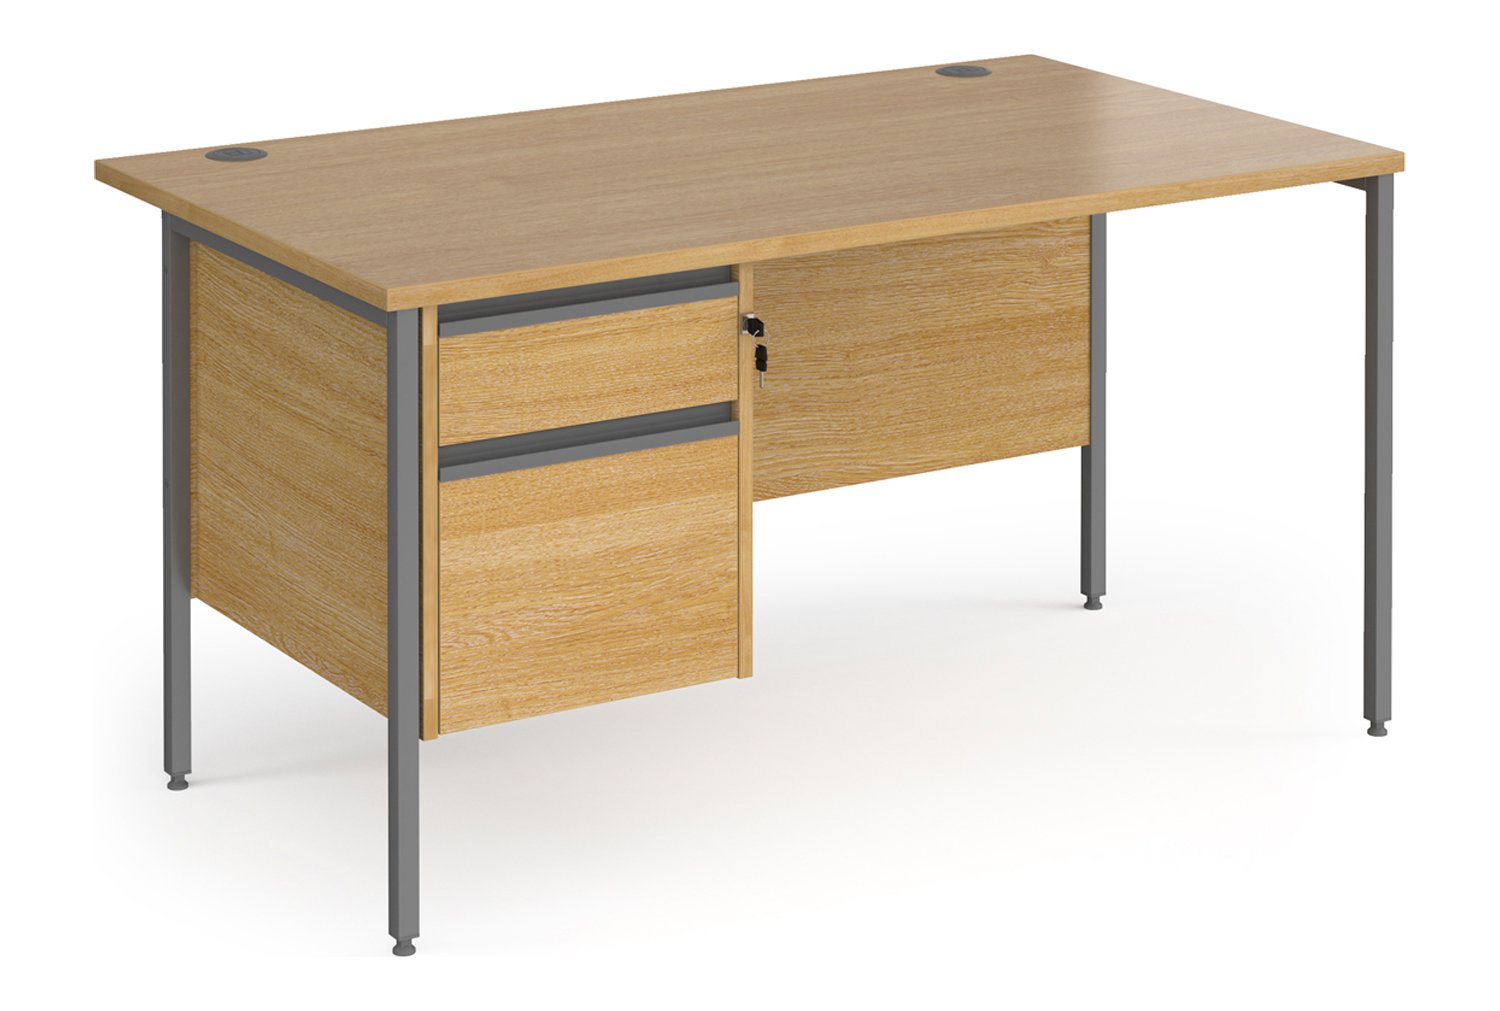 Value Line Classic+ Rectangular H-Leg Office Desk 2 Drawers (Graphite Leg), 140wx80dx73h (cm), Oak, Fully Installed